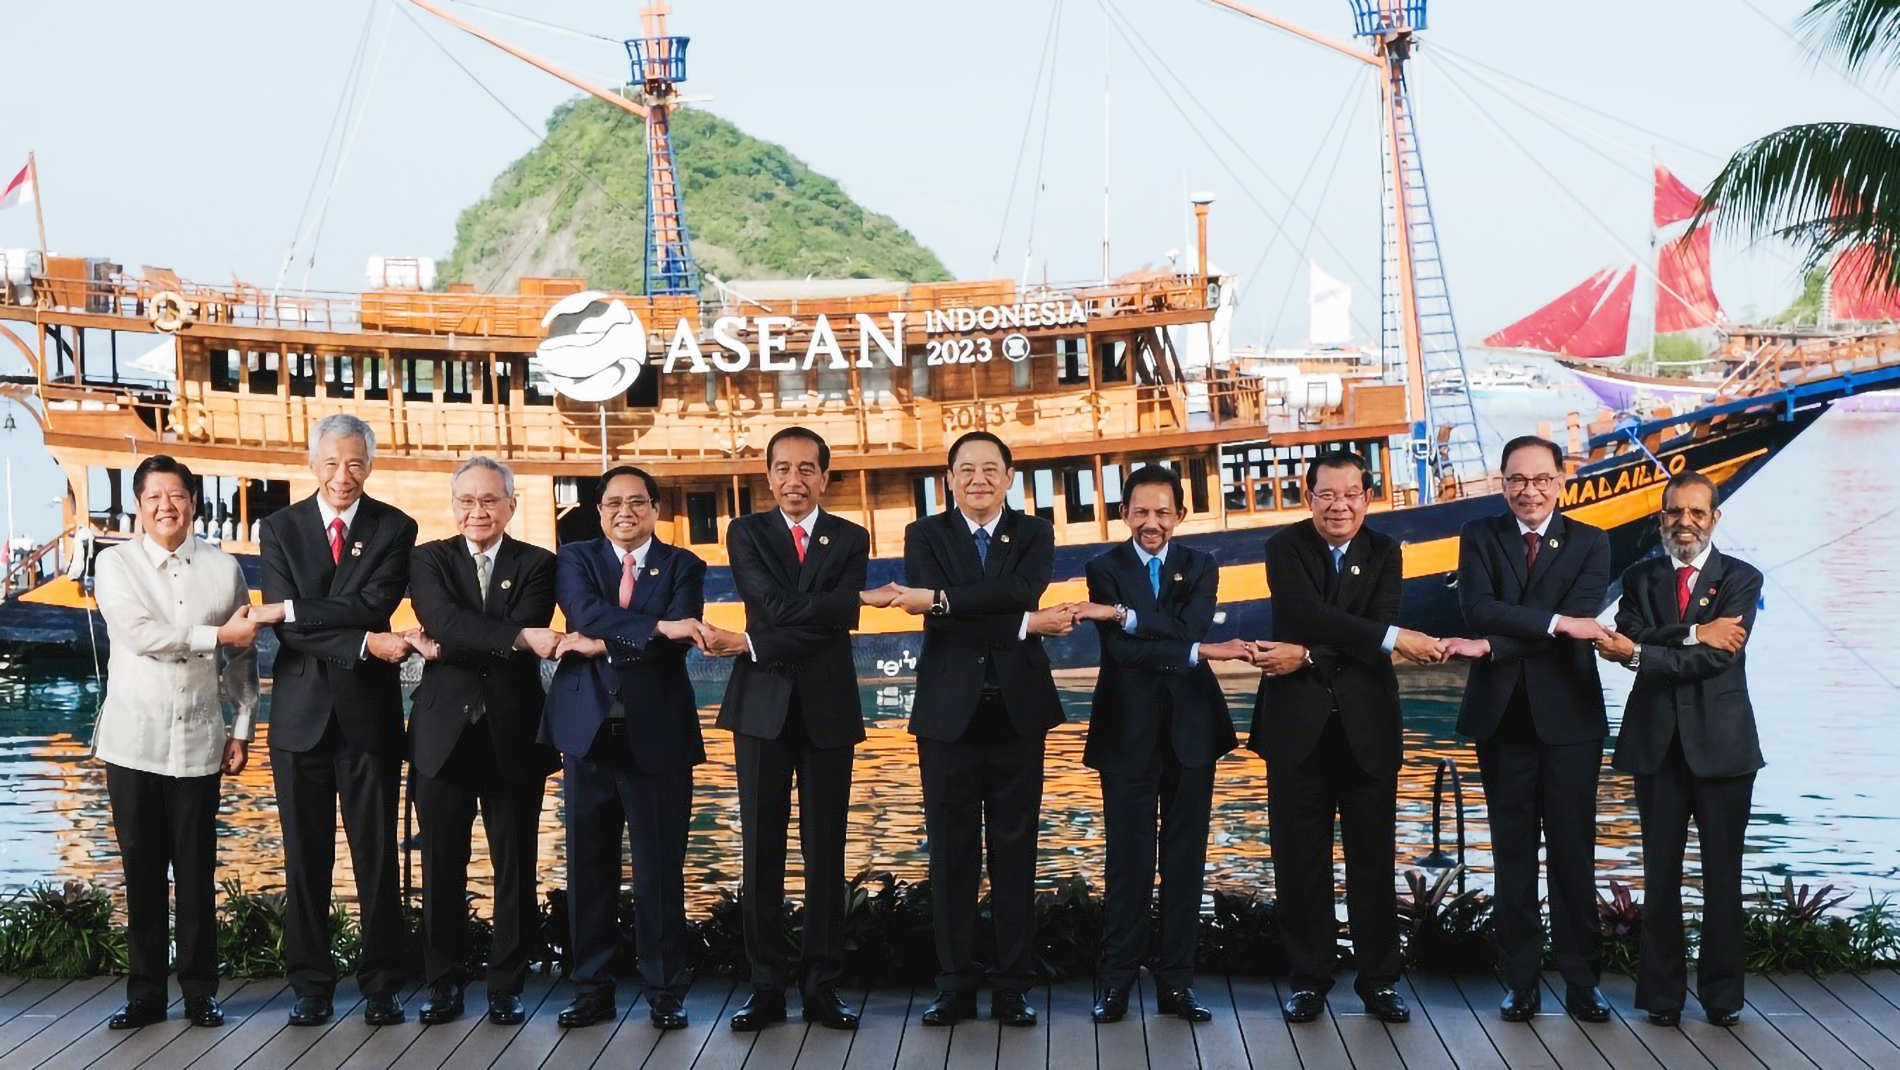 Các nhà lãnh đạo ASEAN bắt tay theo phong cách đặc trưng của khối trước khi bắt đầu Hội nghị cấp cao lần thứ 42. (Ảnh: Reuters)